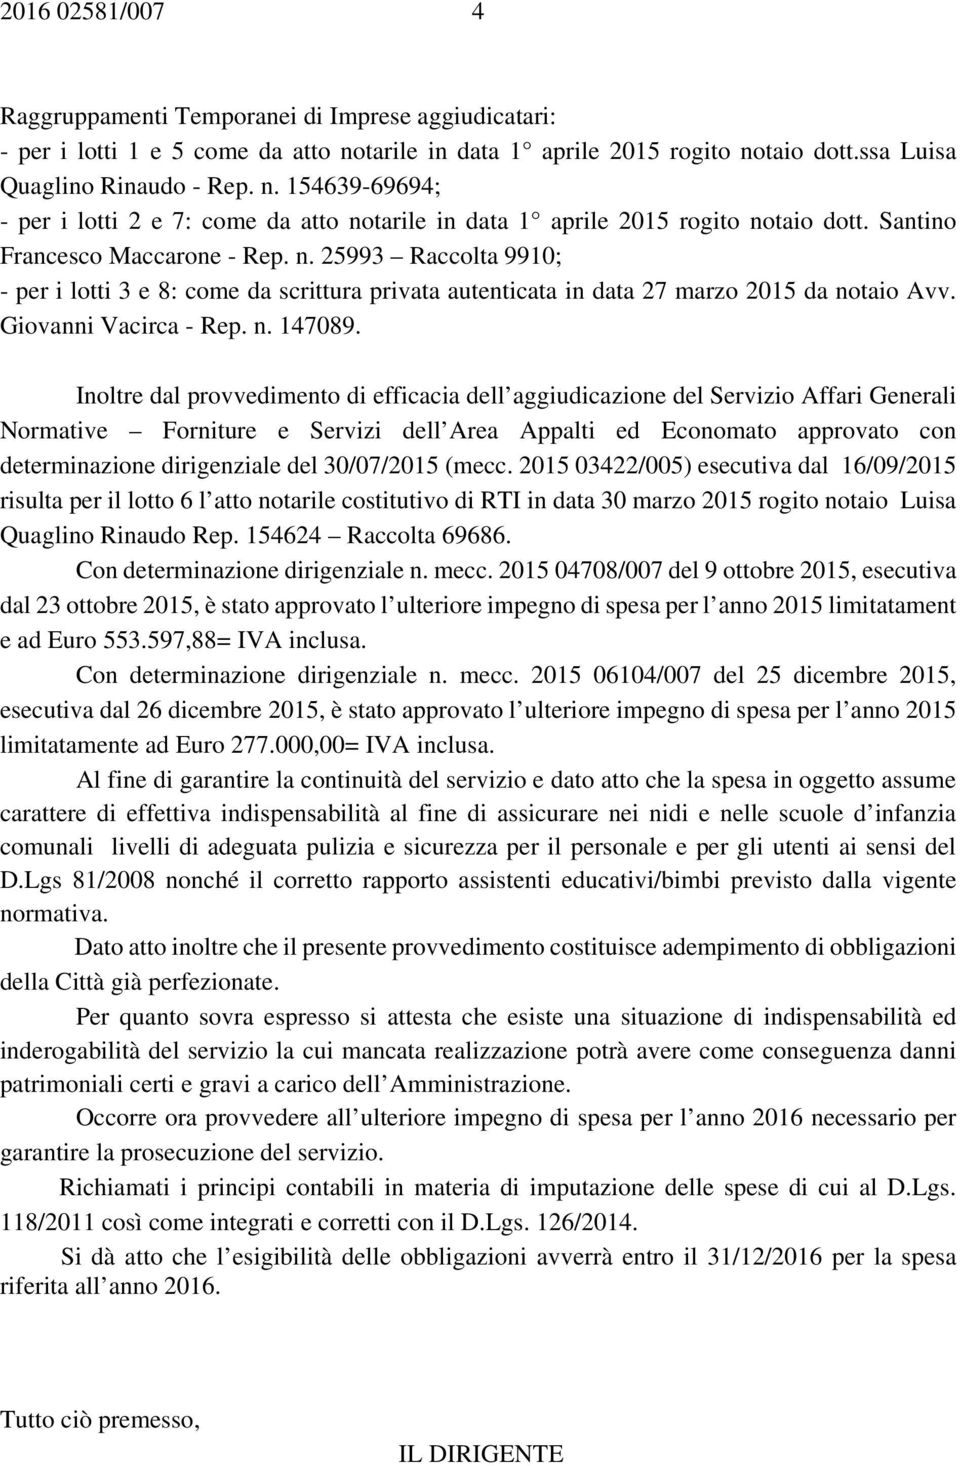 Santino Francesco Maccarone - Rep. n. 25993 Raccolta 9910; - per i lotti 3 e 8: come da scrittura privata autenticata in data 27 marzo 2015 da notaio Avv. Giovanni Vacirca - Rep. n. 147089.